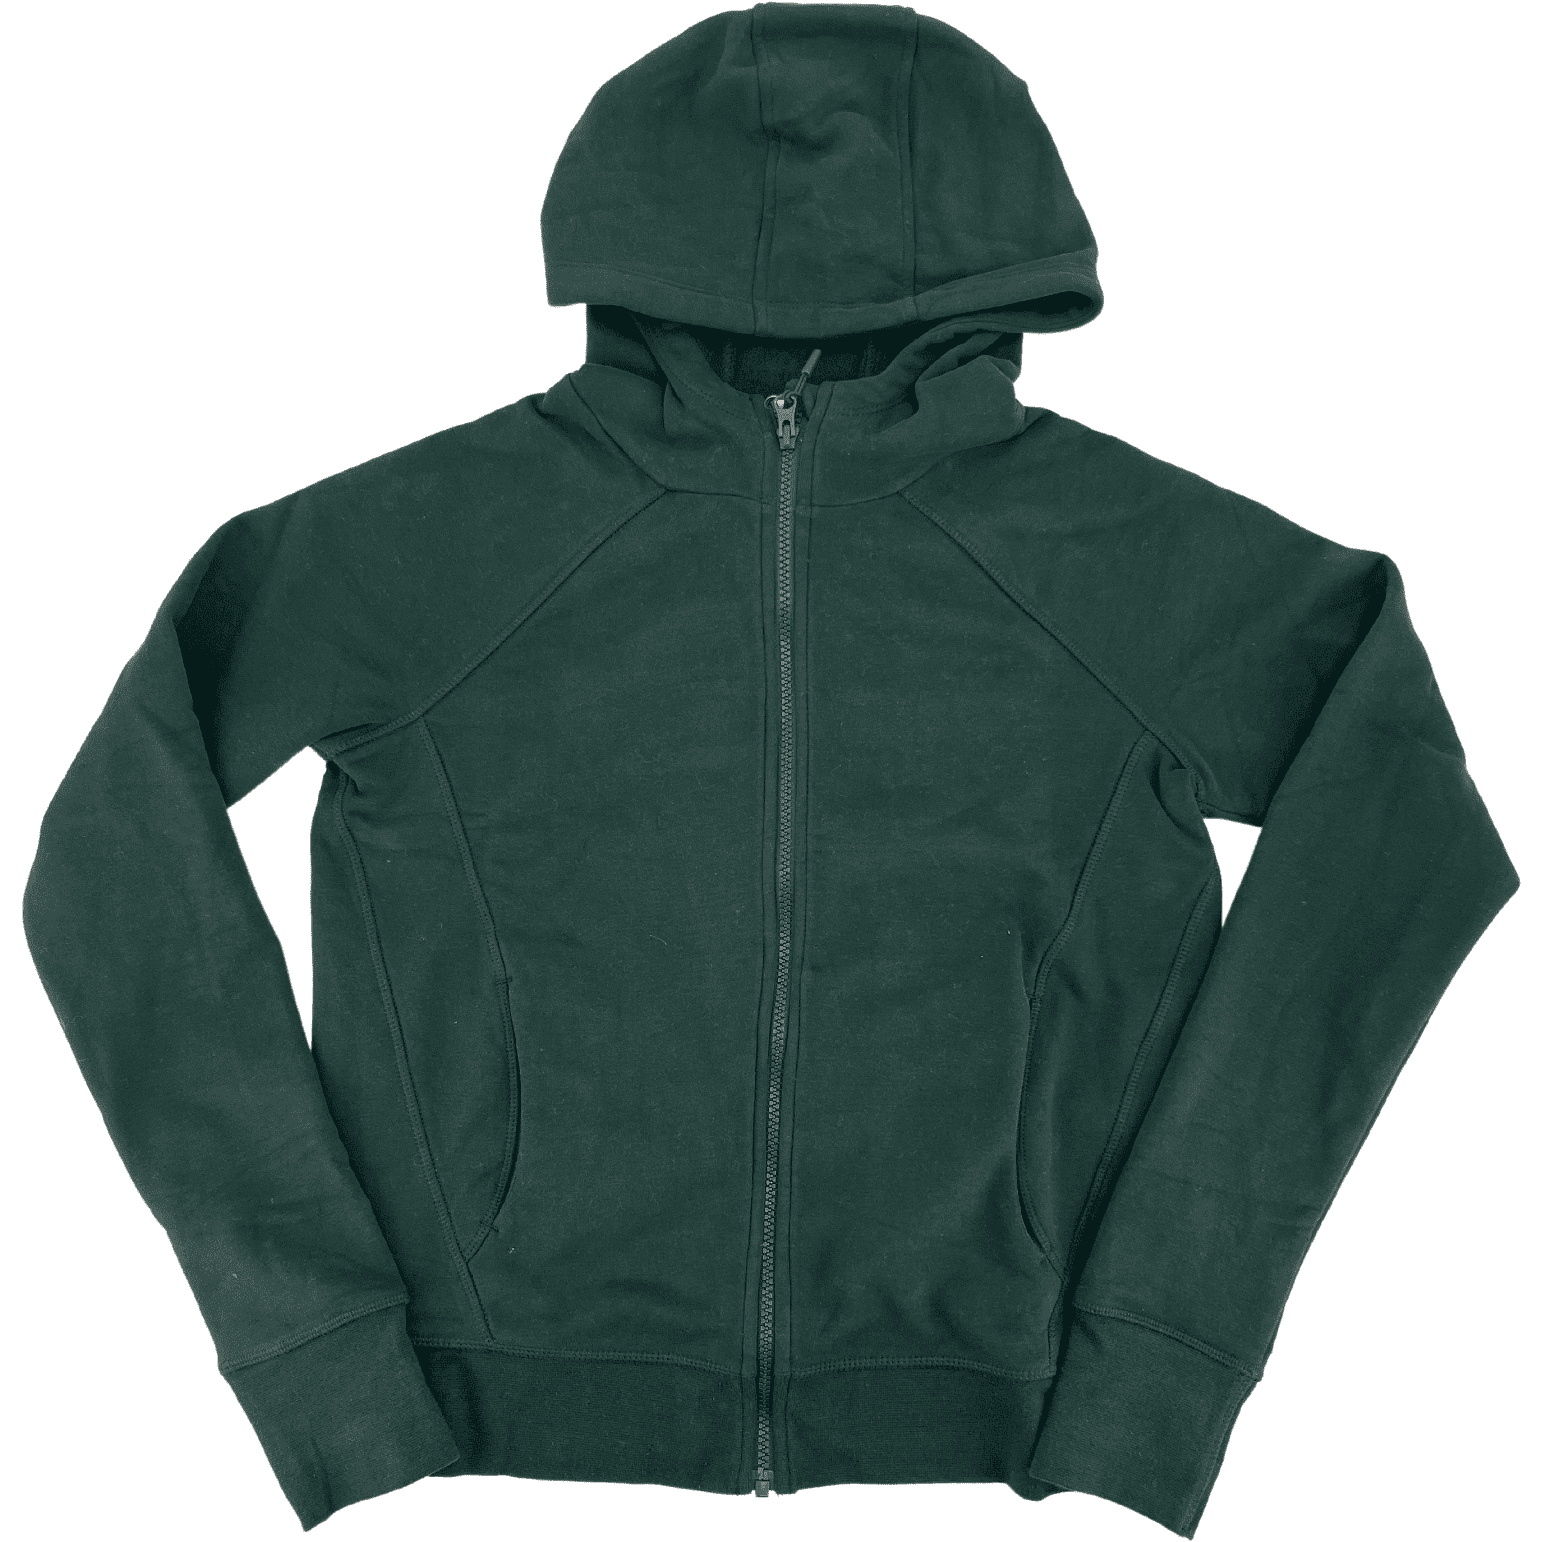 Lole Women’s Dark Green Zip Up Sweater / Size Large